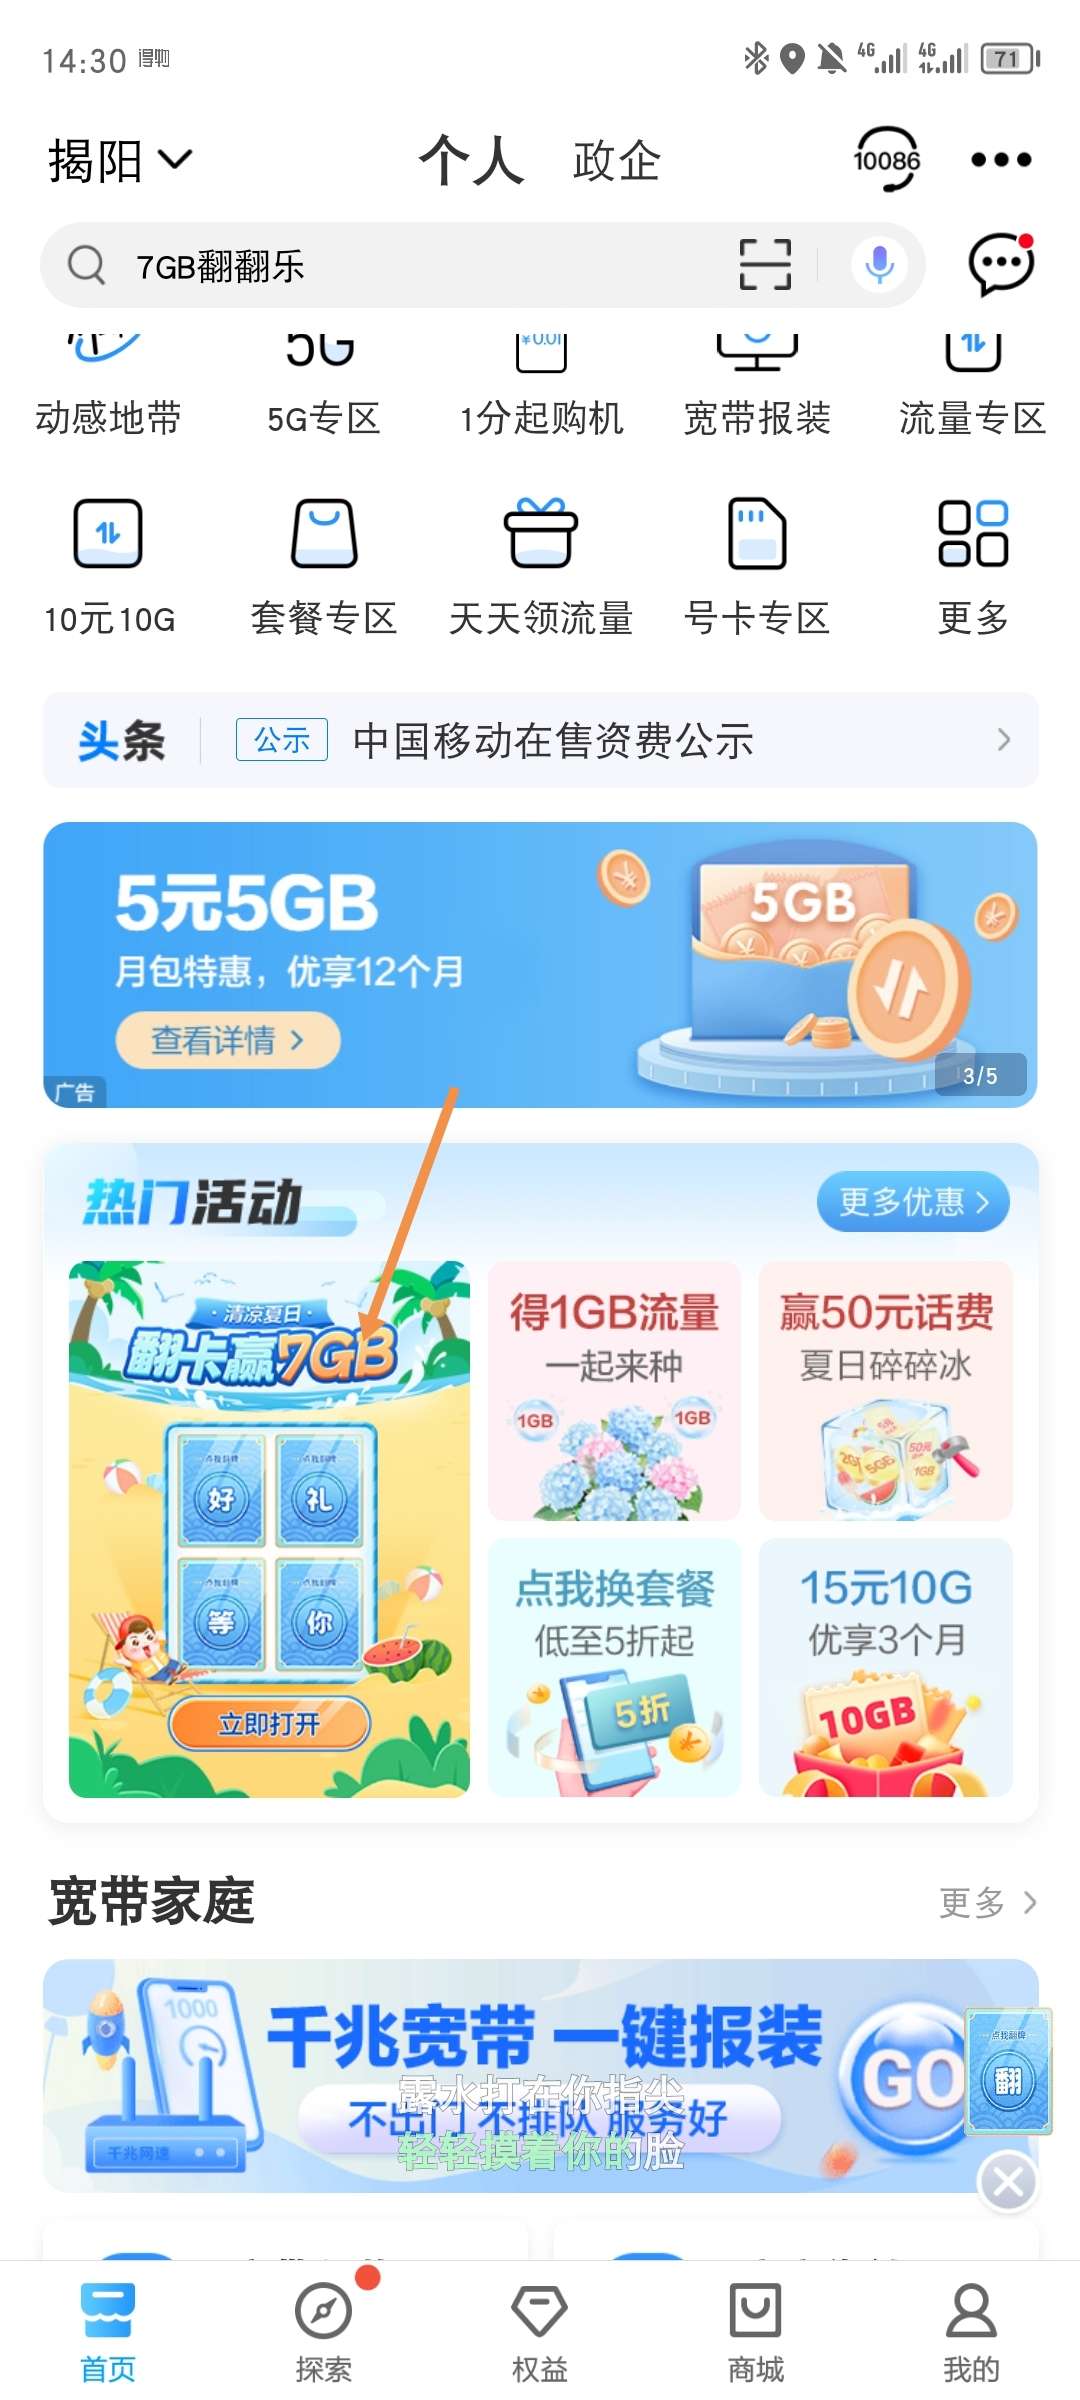 【话费流量】广东移动APP翻牌抽流量 最高7GB_免费流量